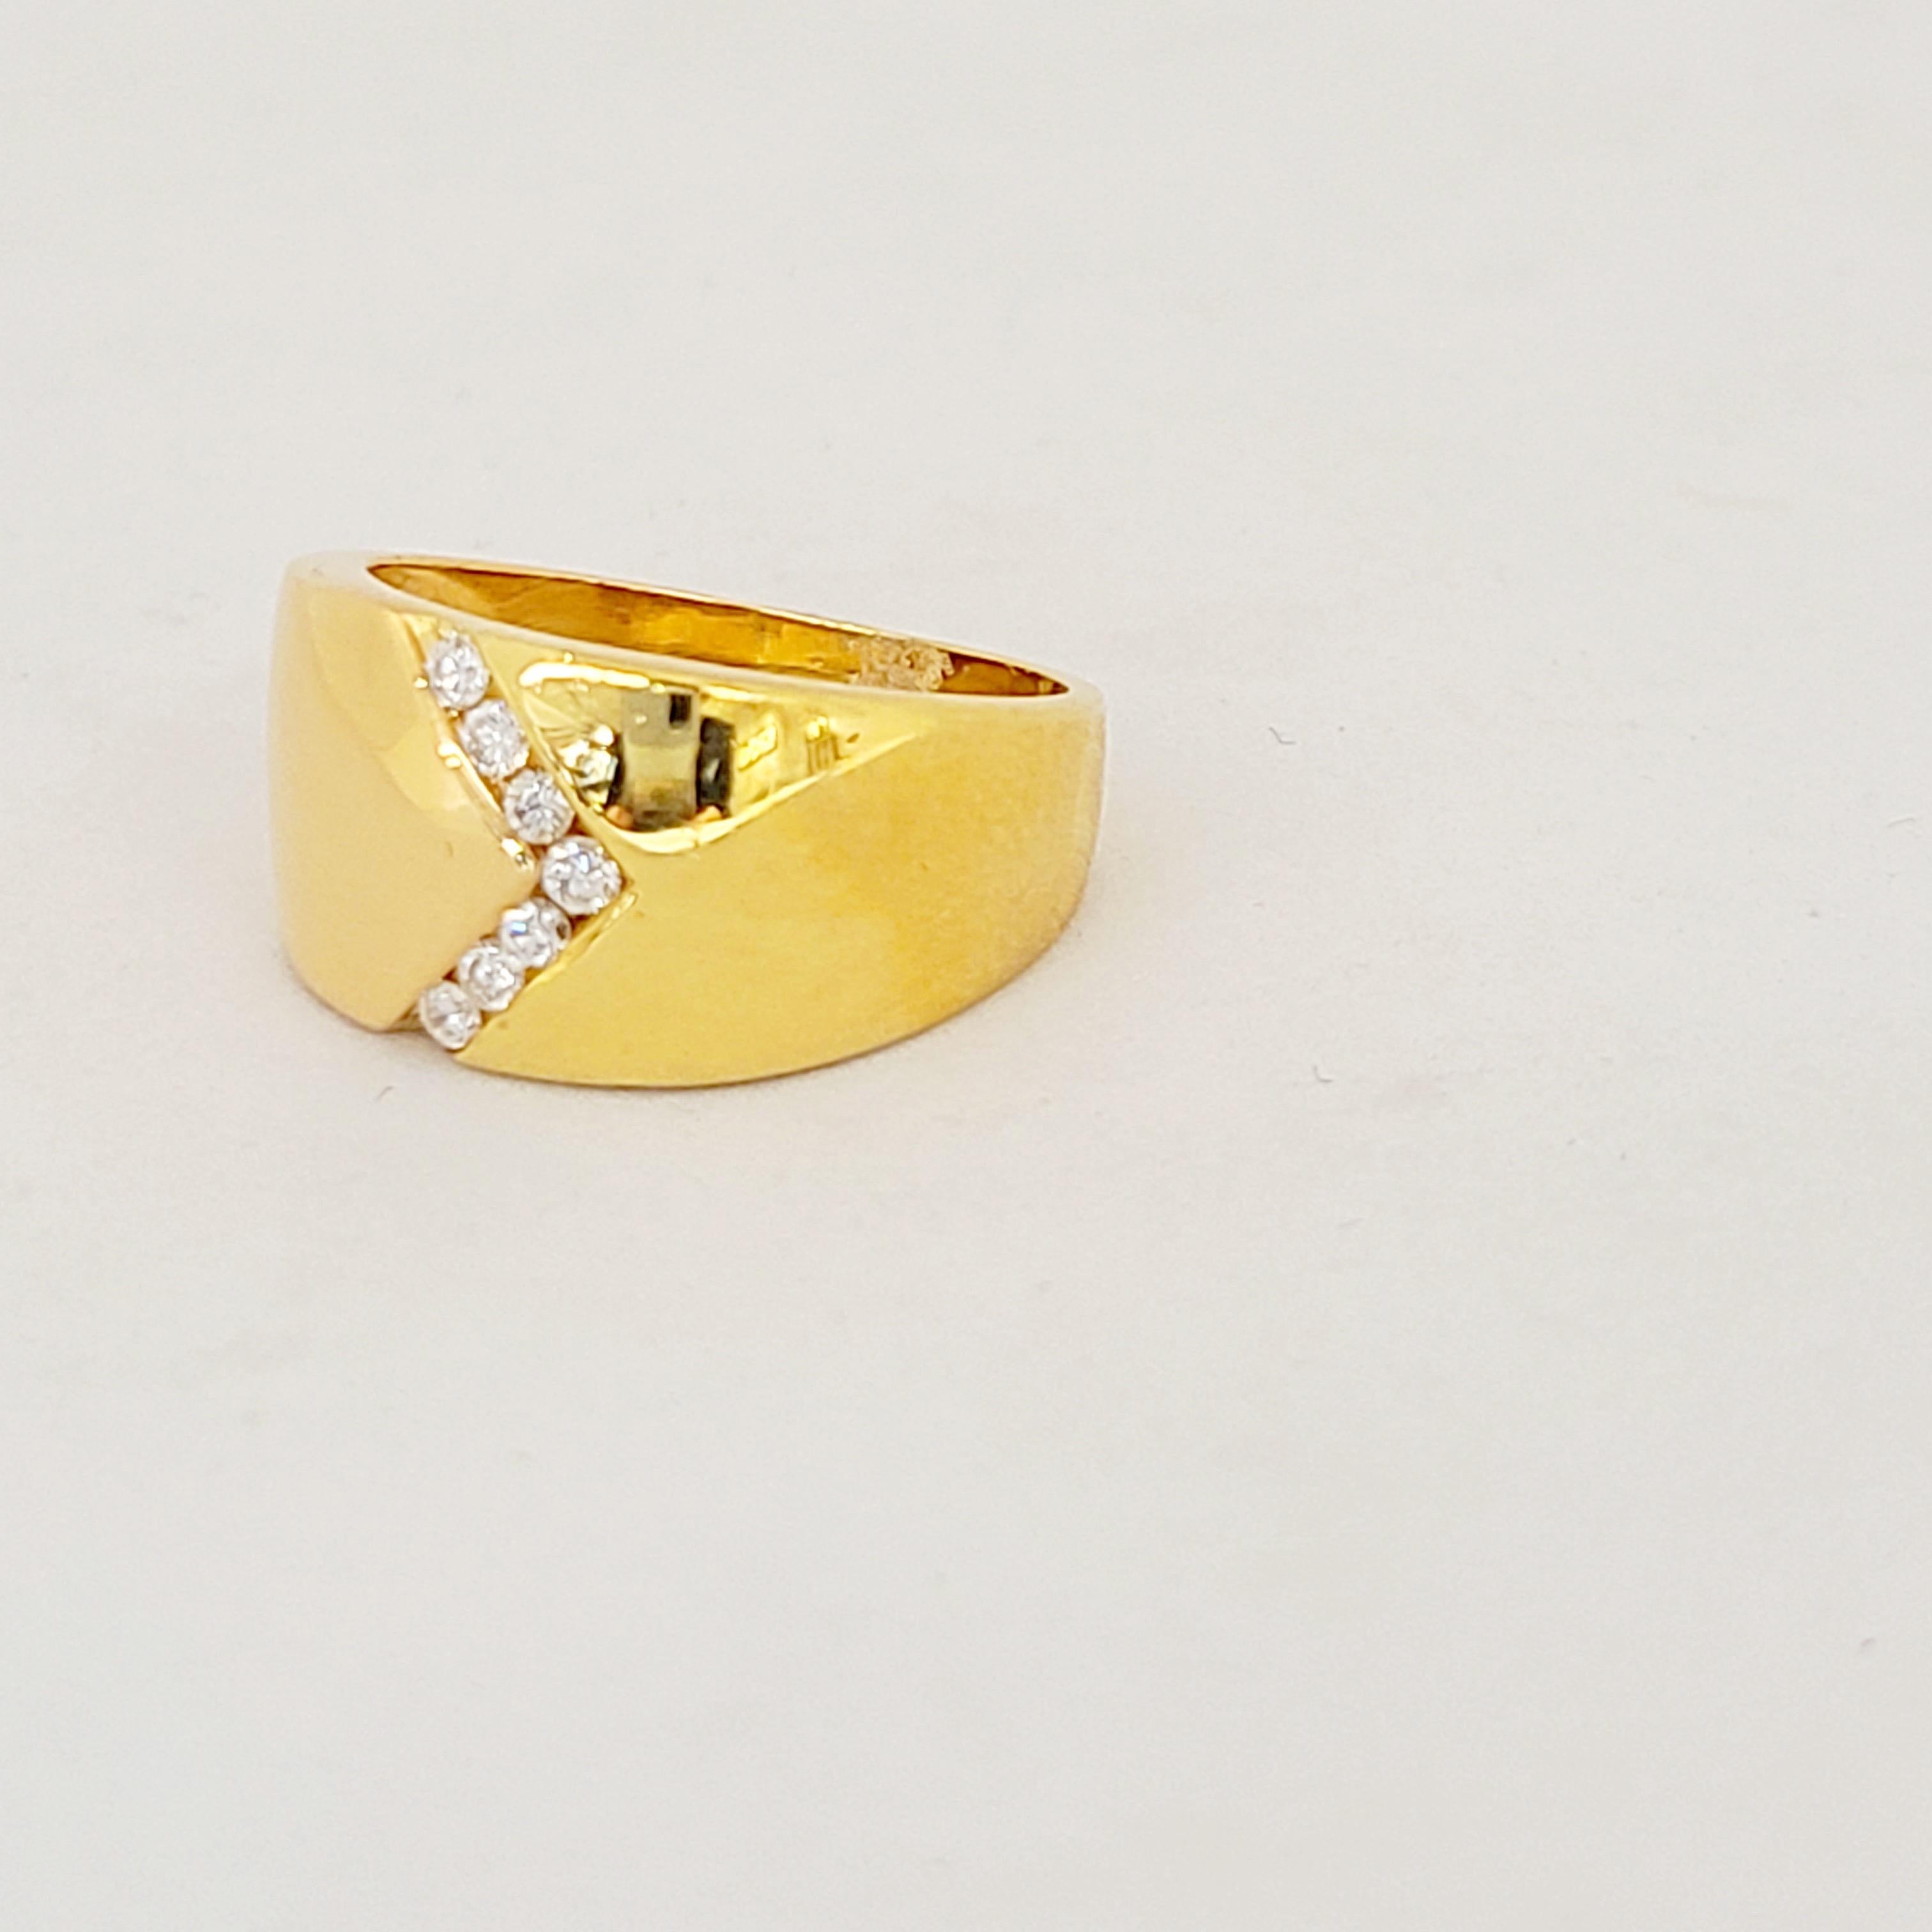 Hübscher und glänzender Ring aus 18 Karat Gelbgold, besetzt mit 7 runden Brillanten in einem V-Motiv.
Gewicht des Diamanten 0,21 Karat
Gestempelt 750
Größe 7.5 kann verfügbar sein